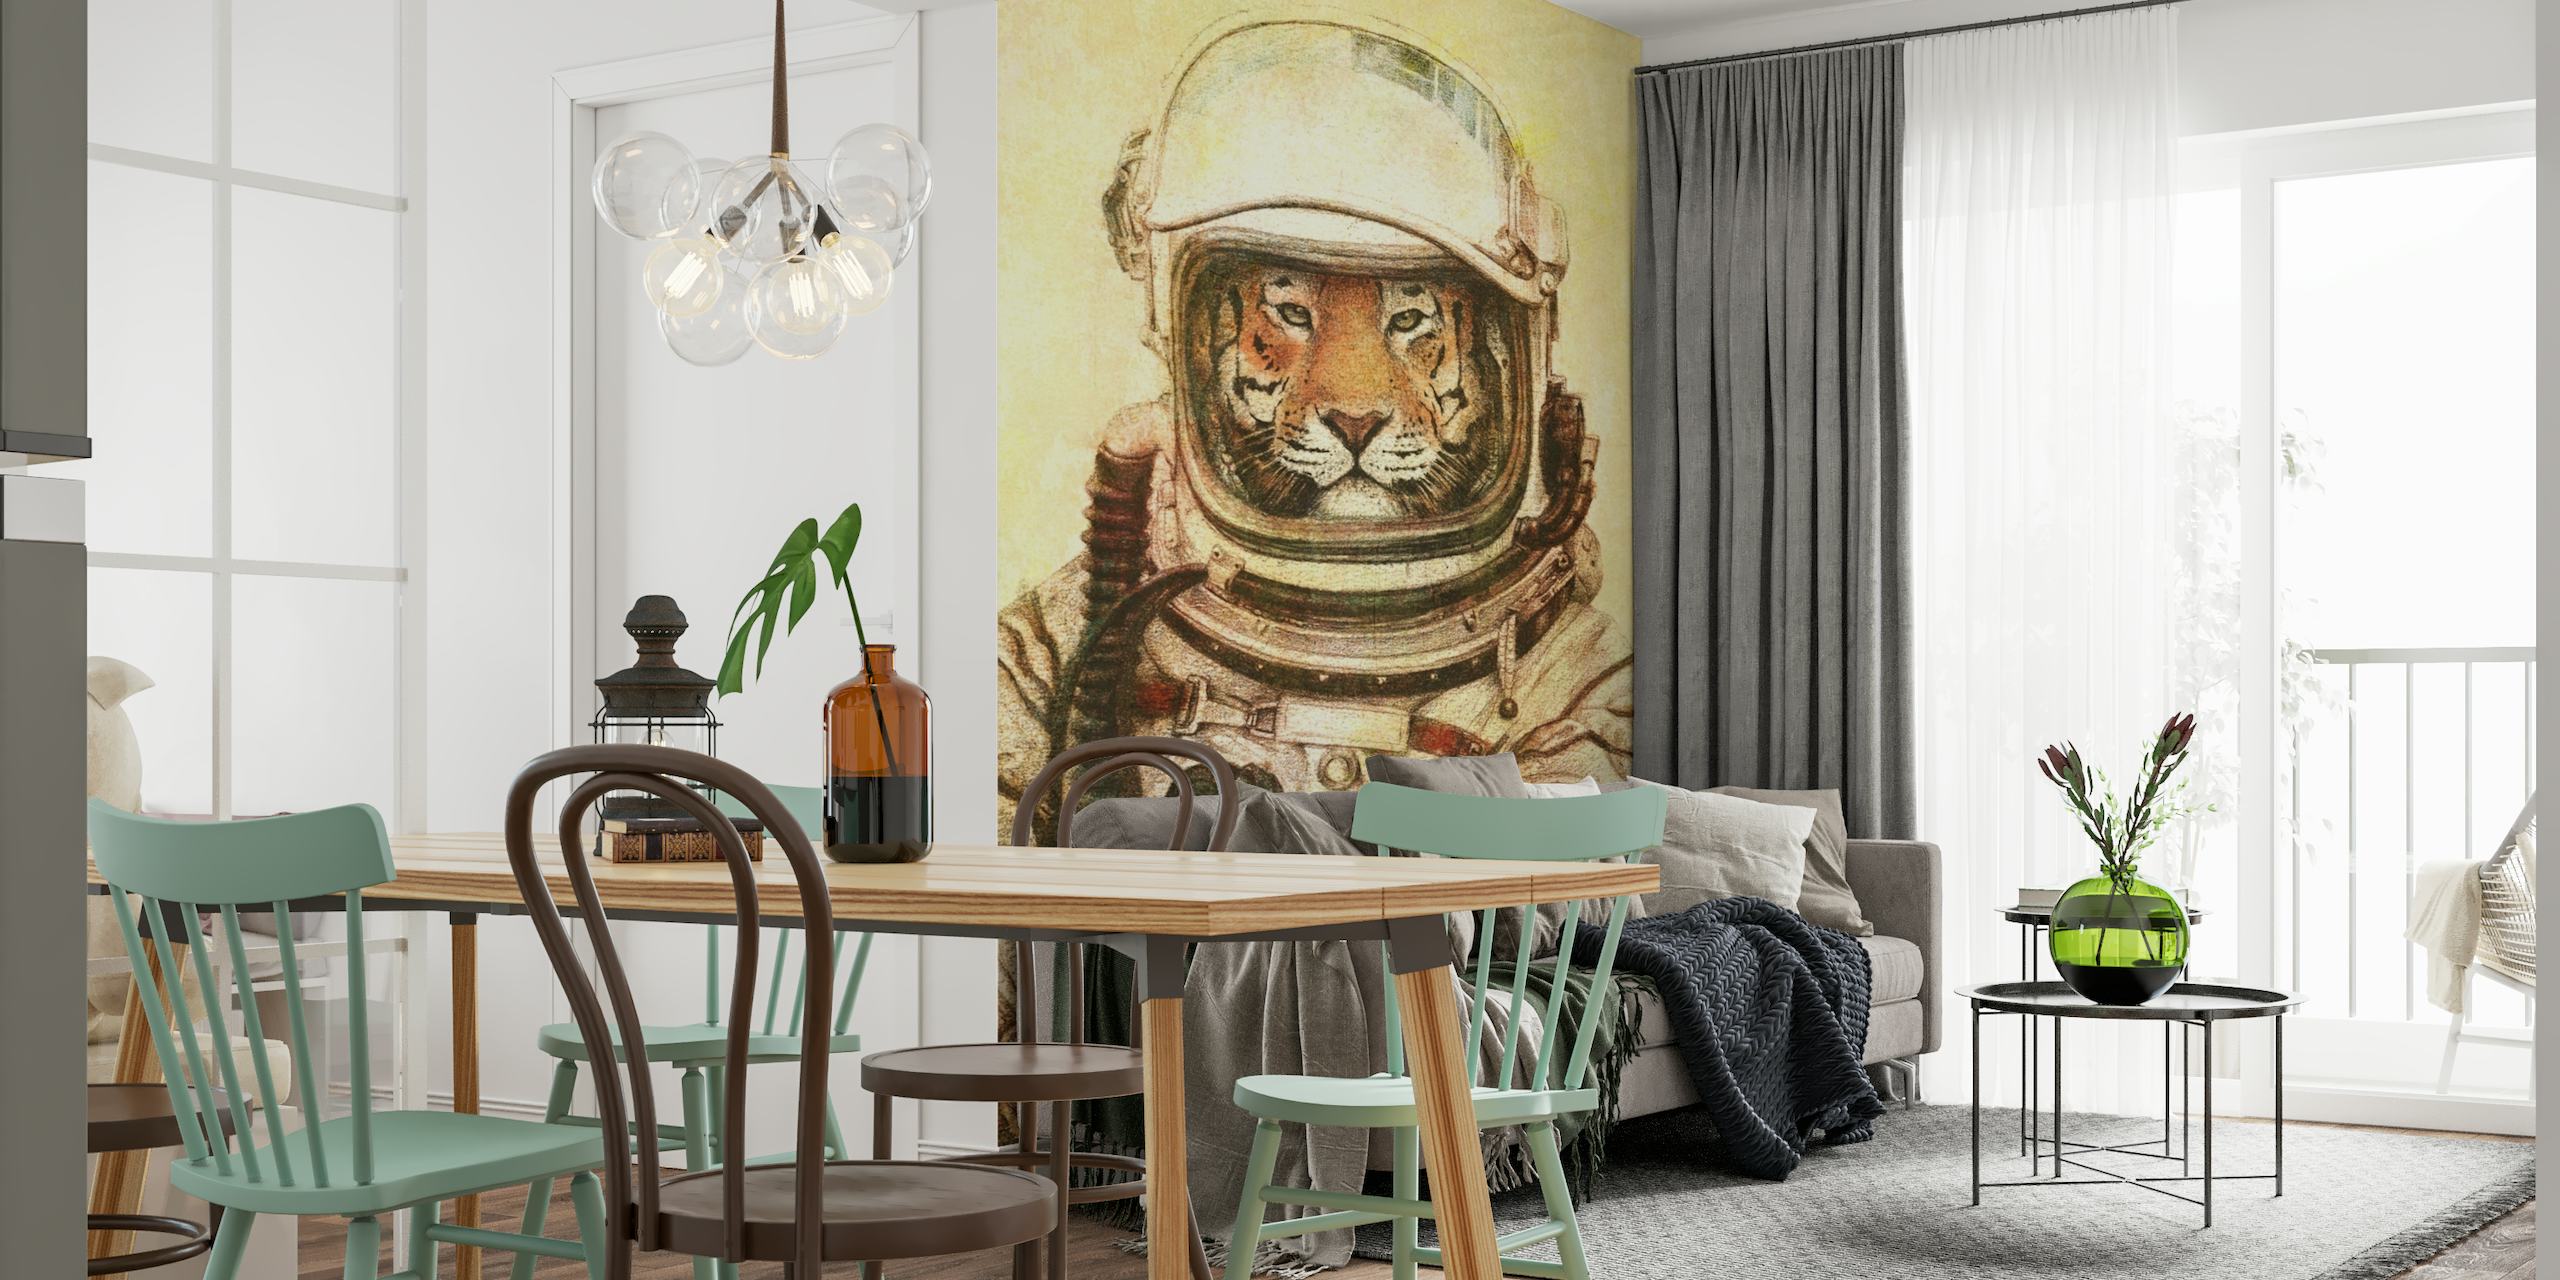 Zidna slika o astronautu tigru koja prikazuje istraživanje svemira s divljim obratom